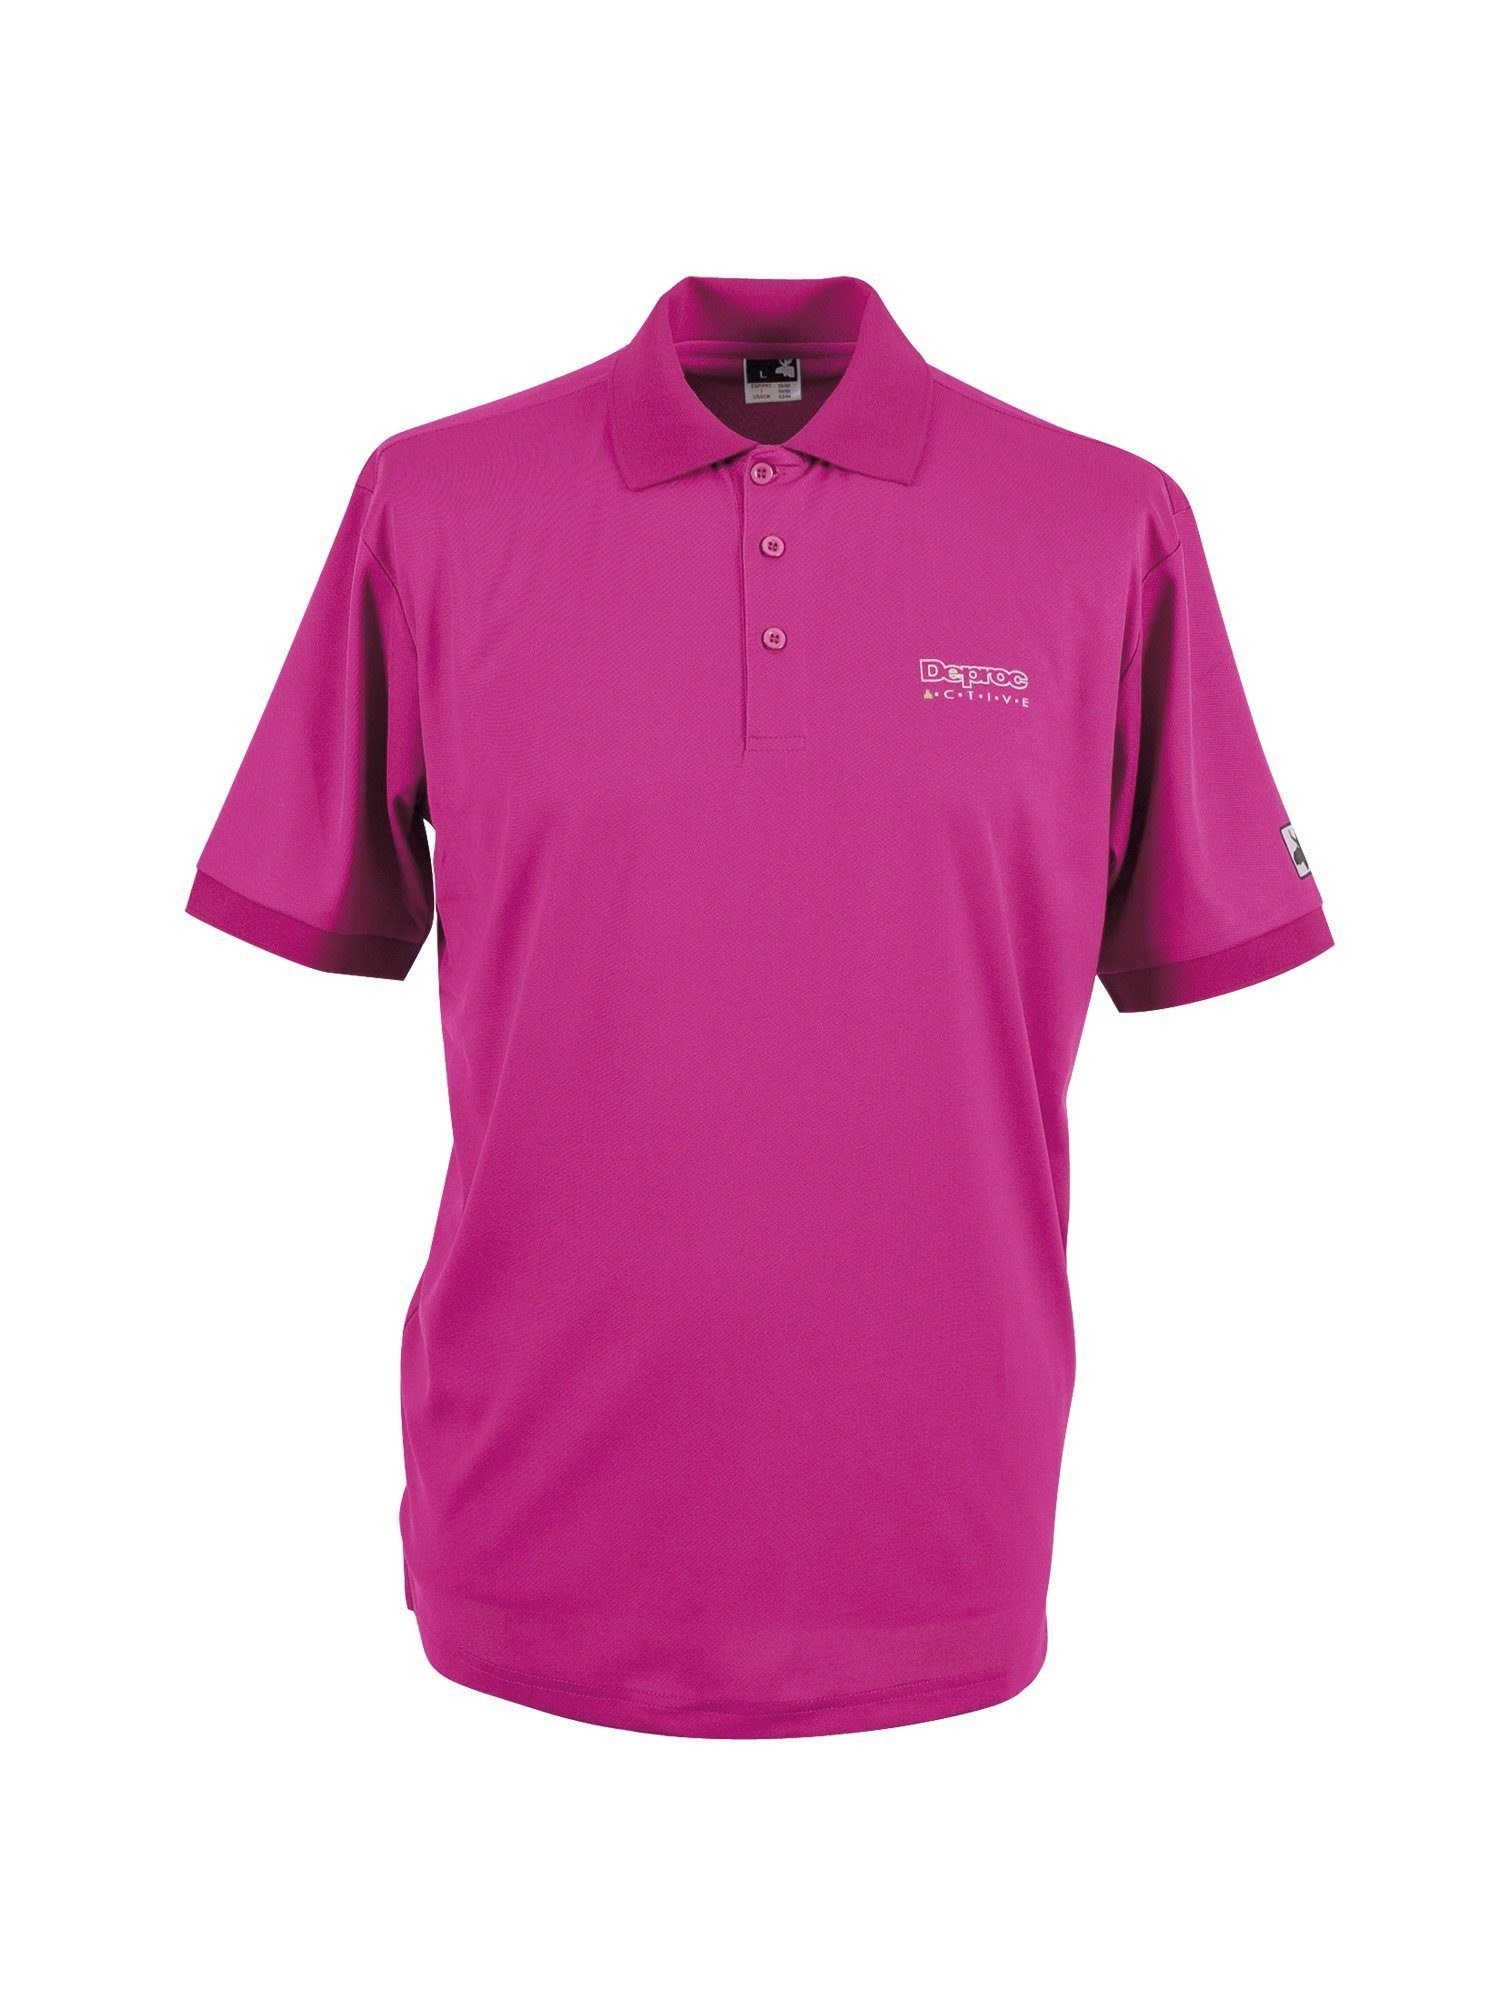 auch Poloshirt Größen Großen Active DEPROC WOMEN erhältlich in HEDLEY pink